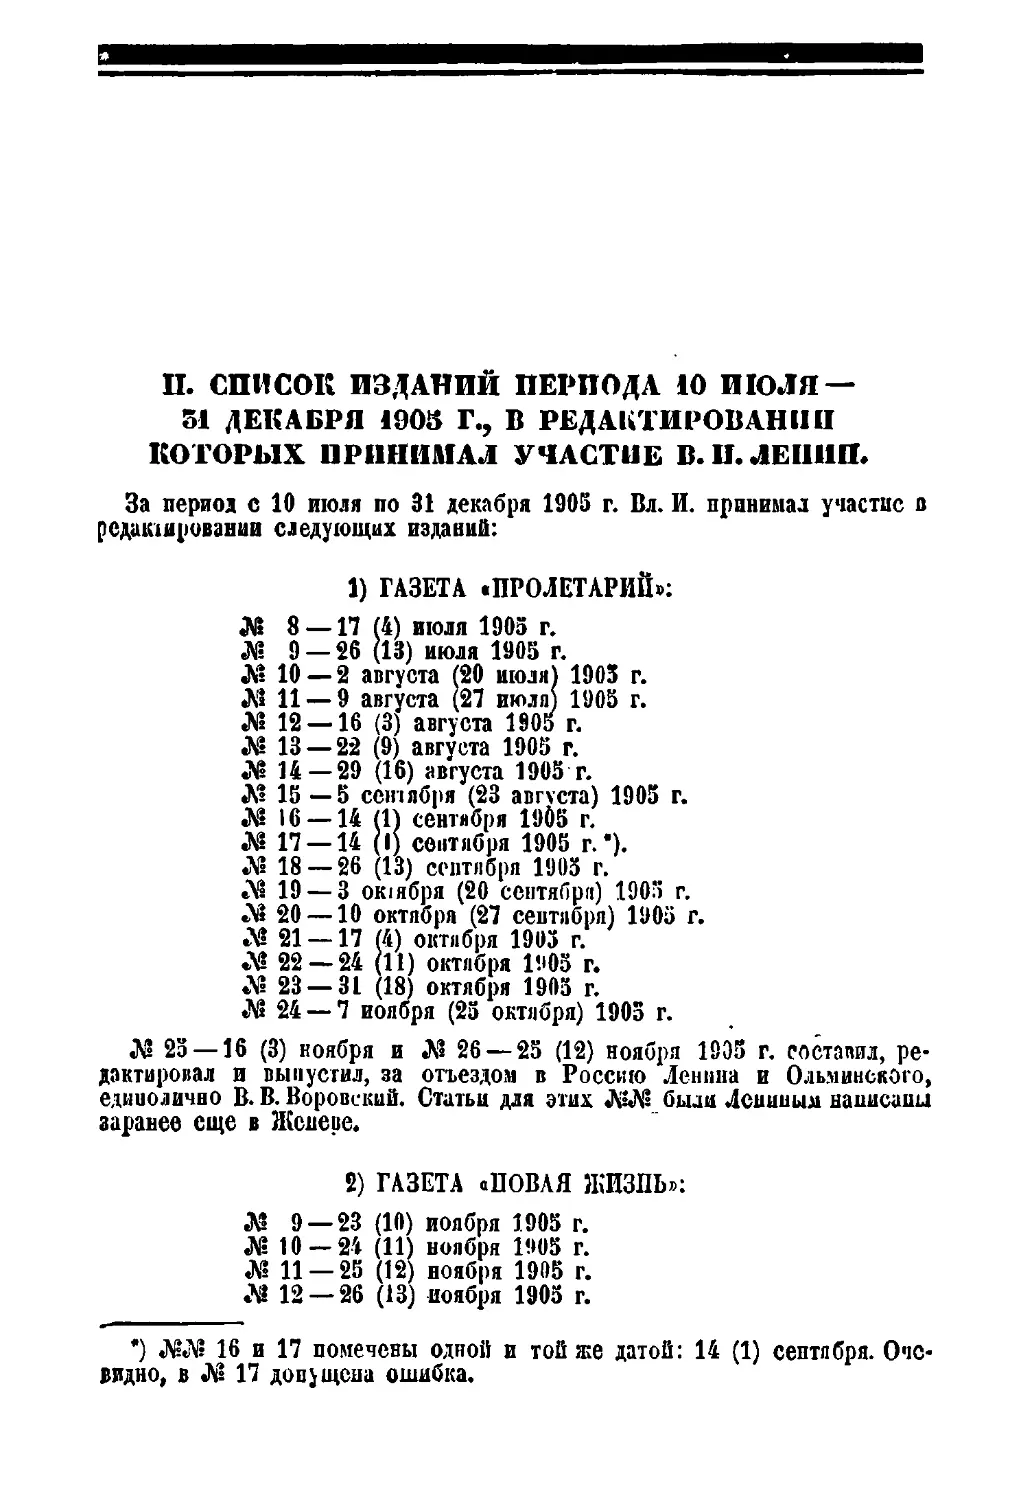 II. Список изданий периода 10 июля — 31 декабря 1905 г., в редактировании которых принимал участие В. И. Ленин